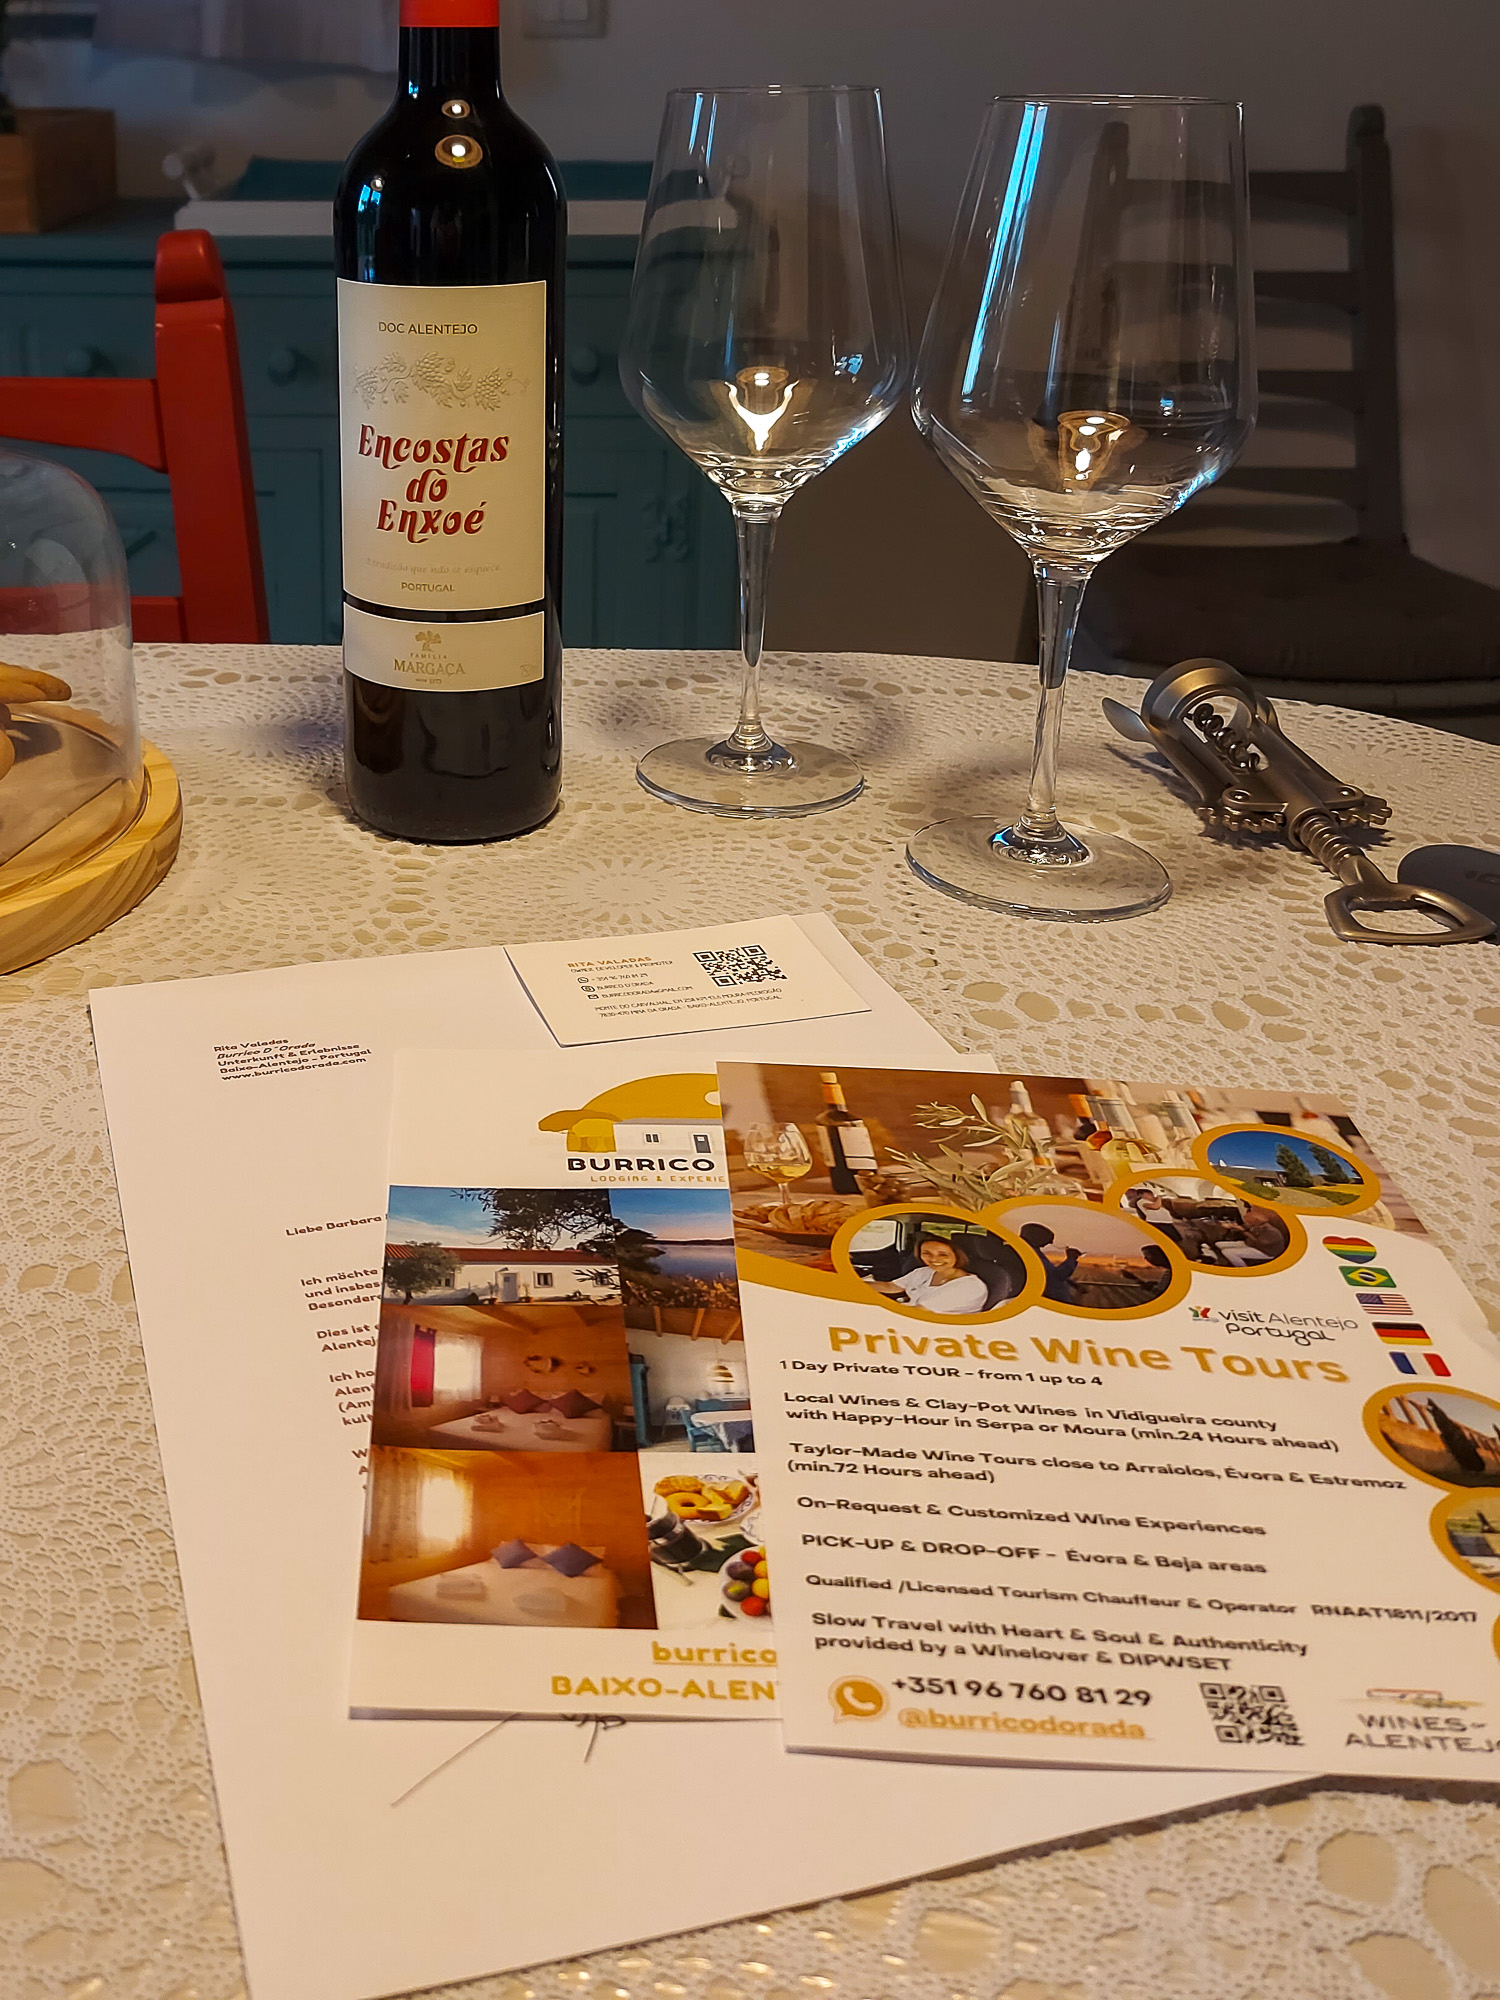 Willkommens-Tisch in der Burrico d'Orada mit Rotwein, Weingläsern und Regionsinfo